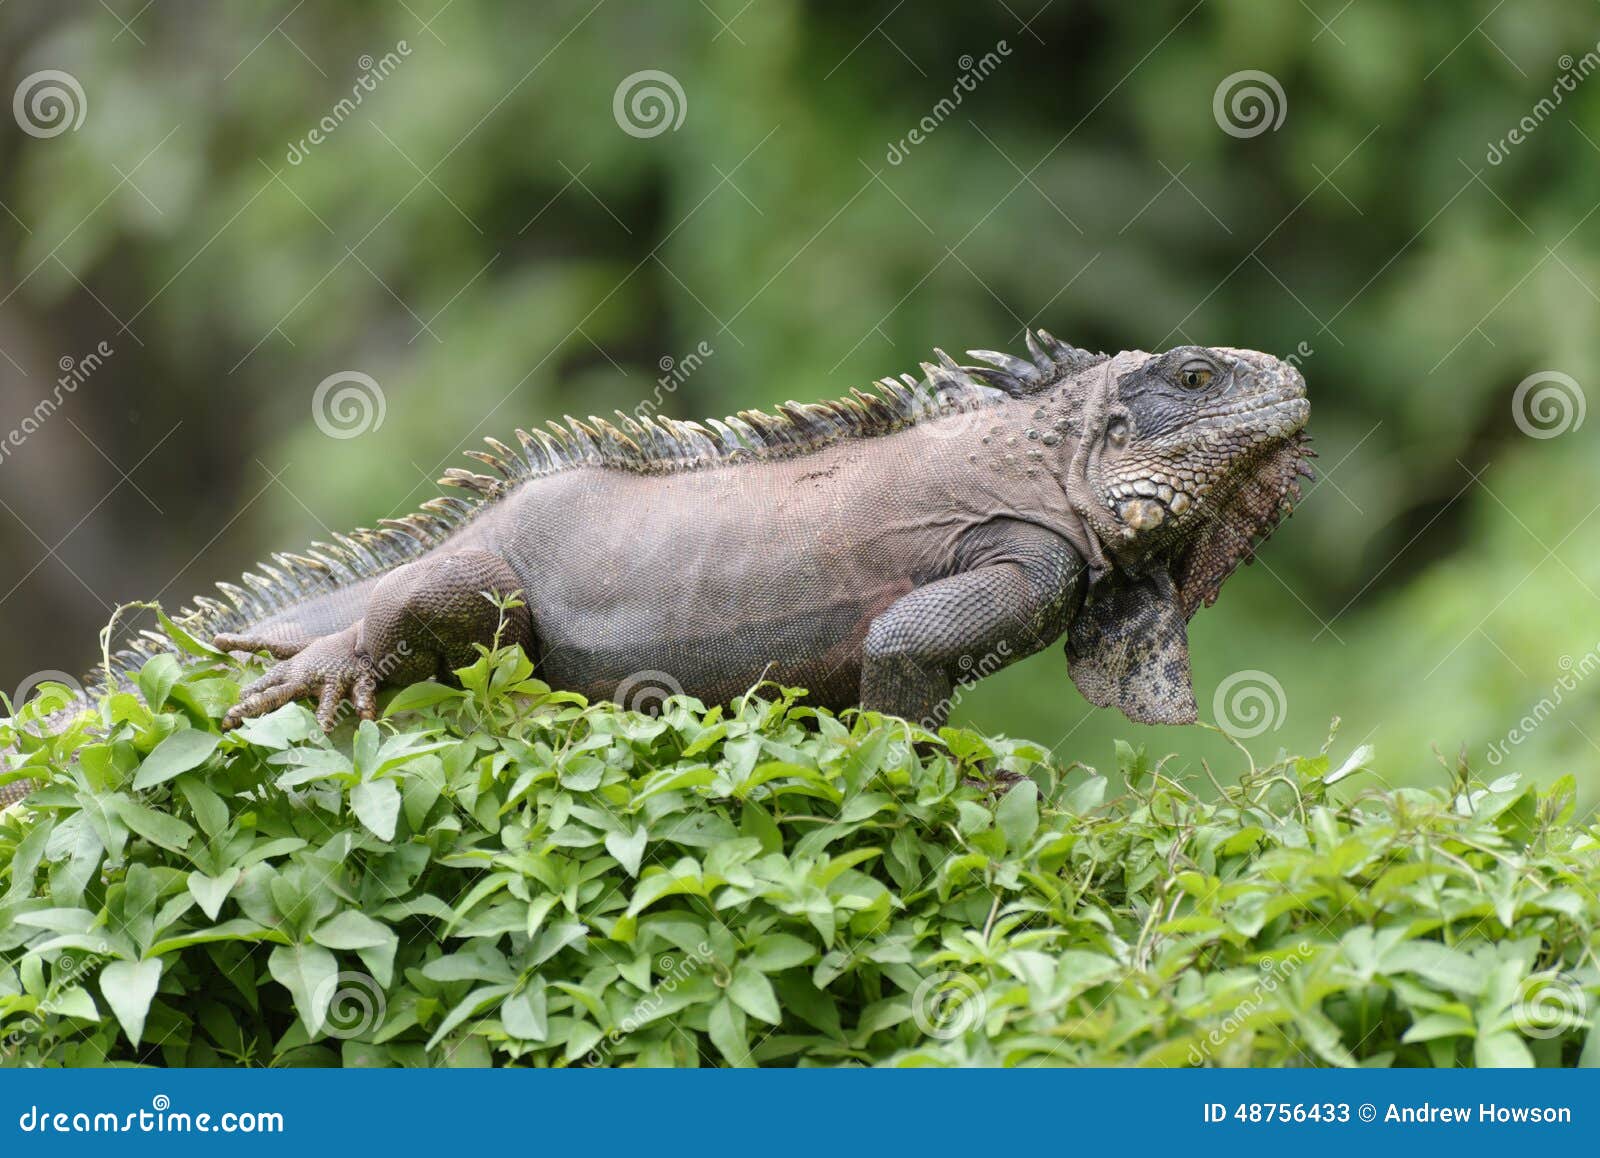 iguana green peru